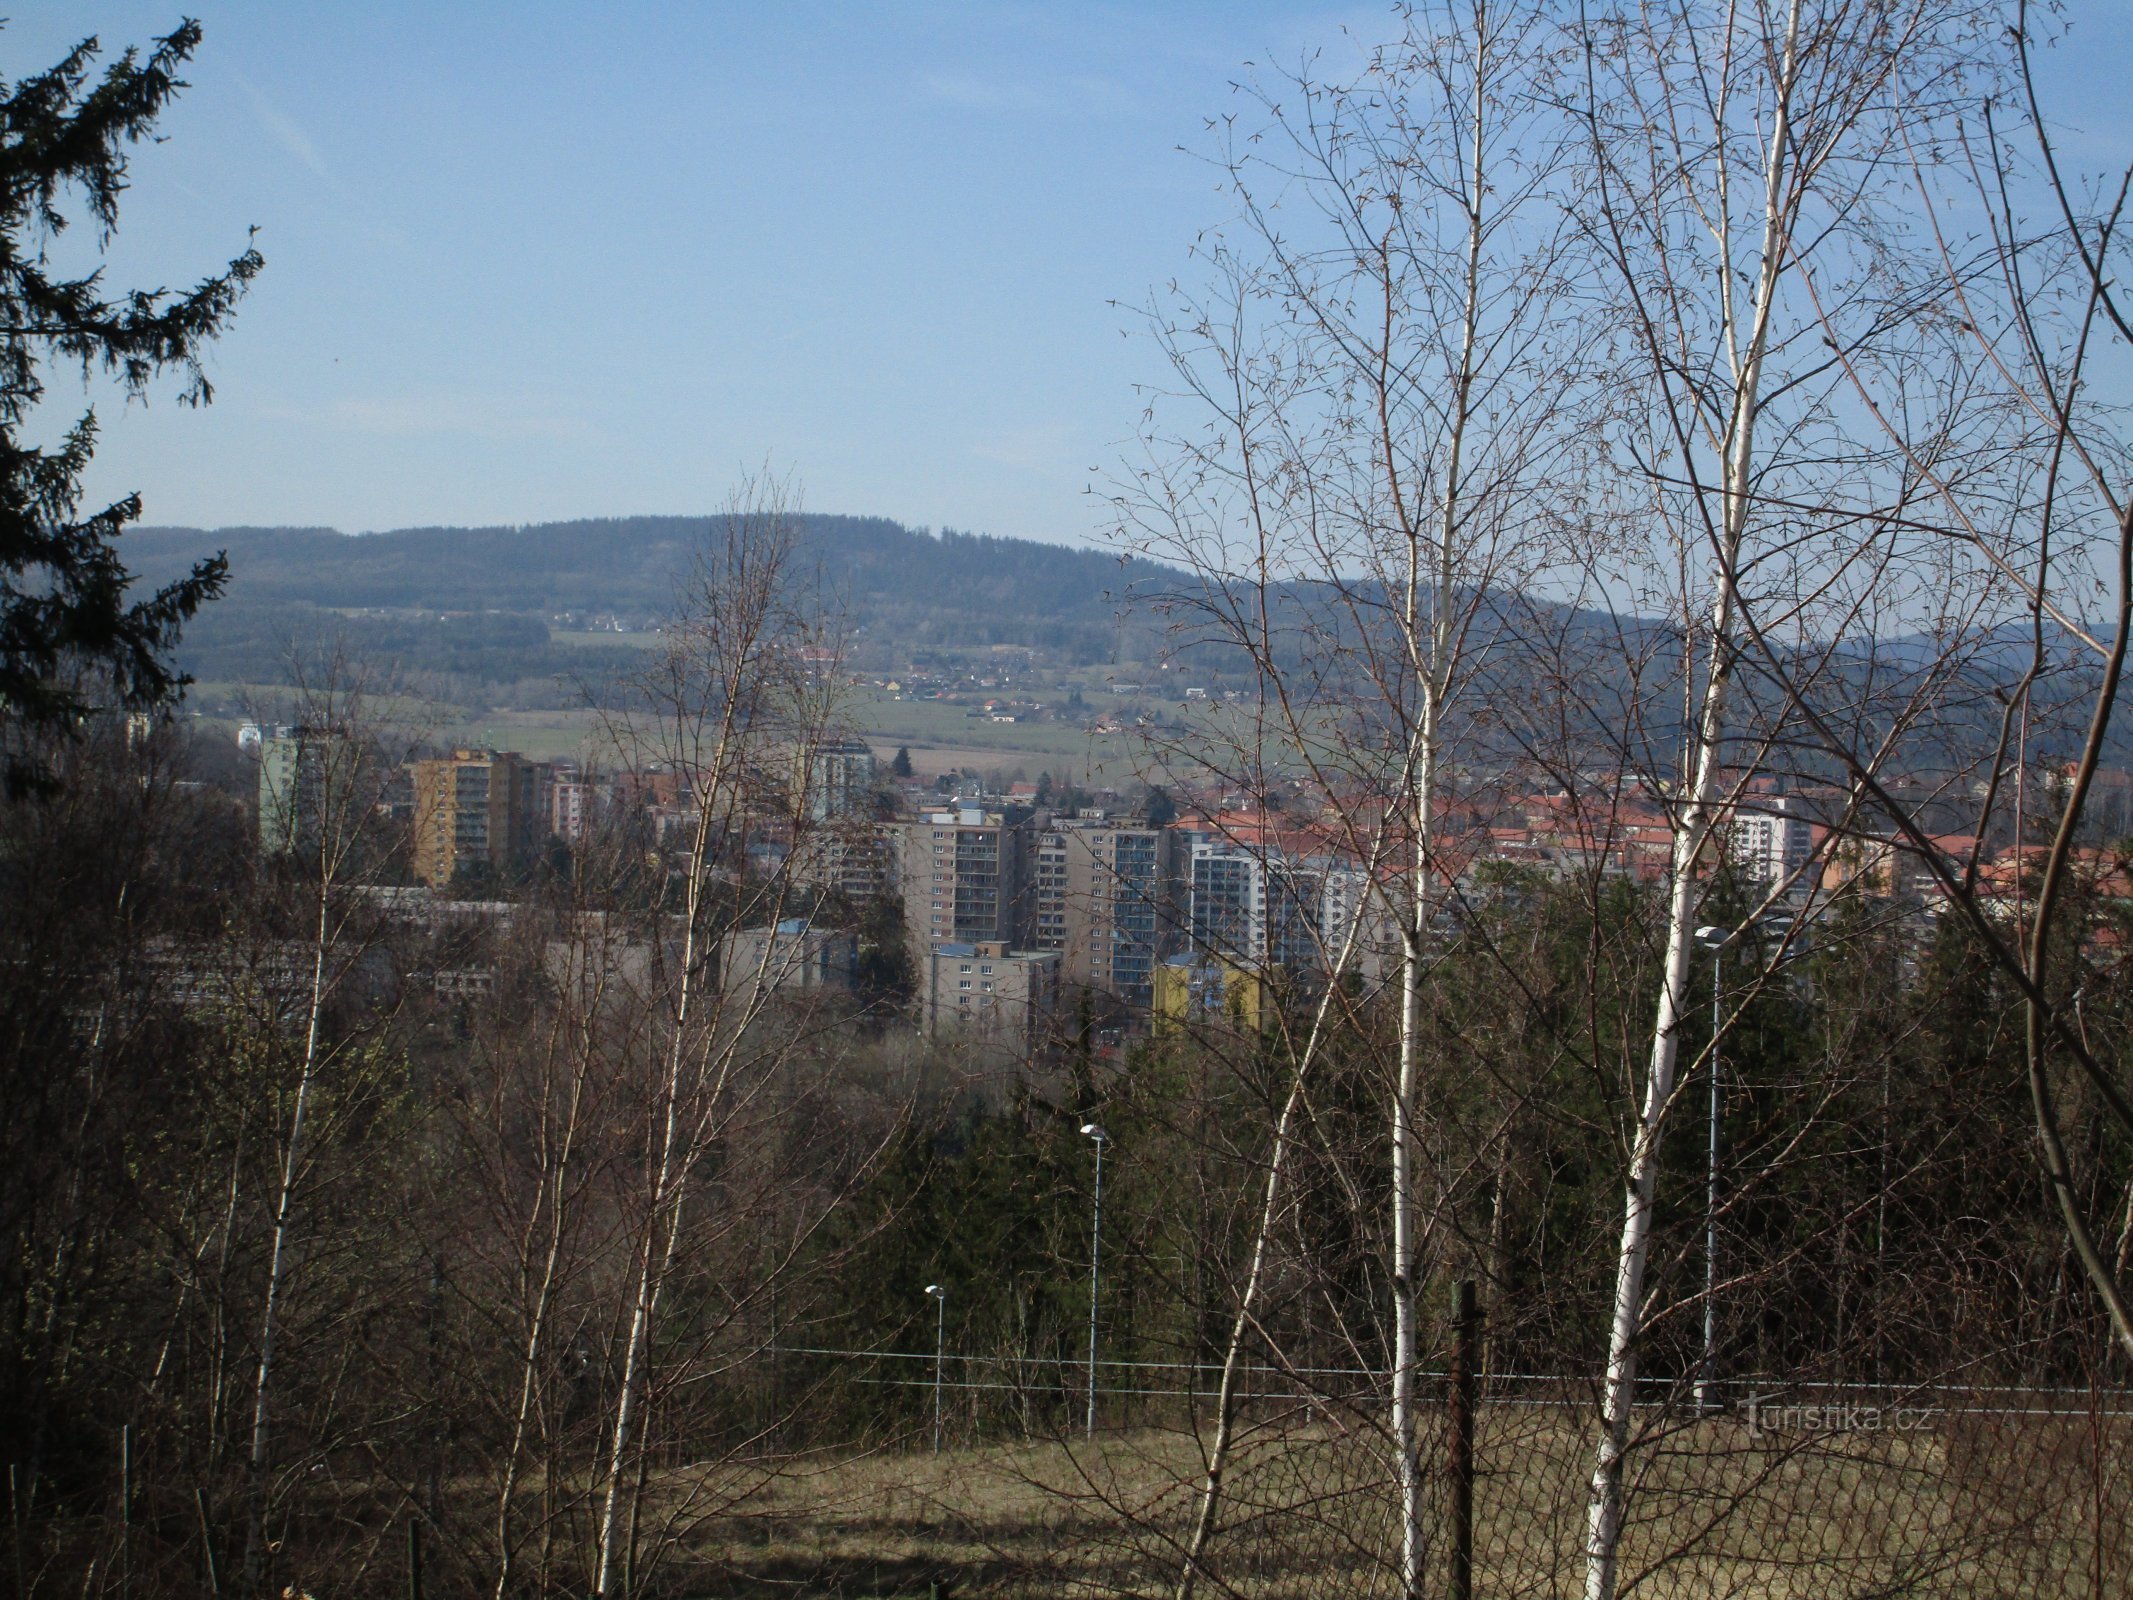 vista de Příbram desde el borde de la ladera, el macizo de Třemošná al fondo